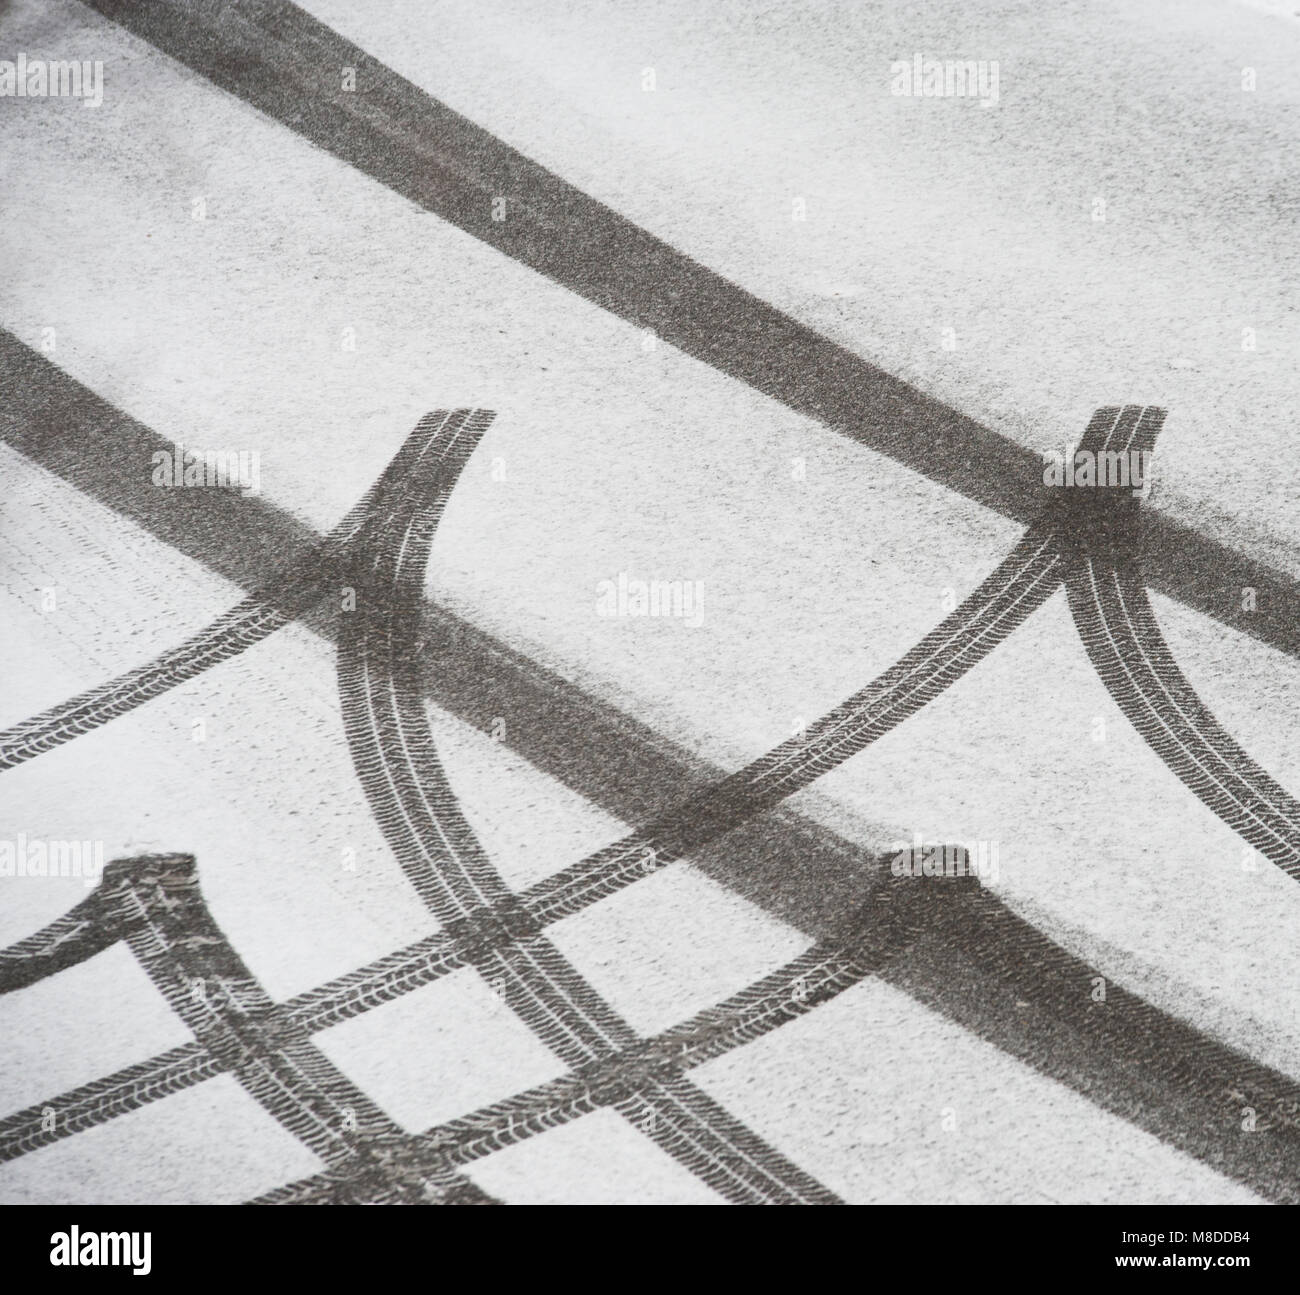 Skidmarks da una vettura in neve fresca su una strada Foto Stock